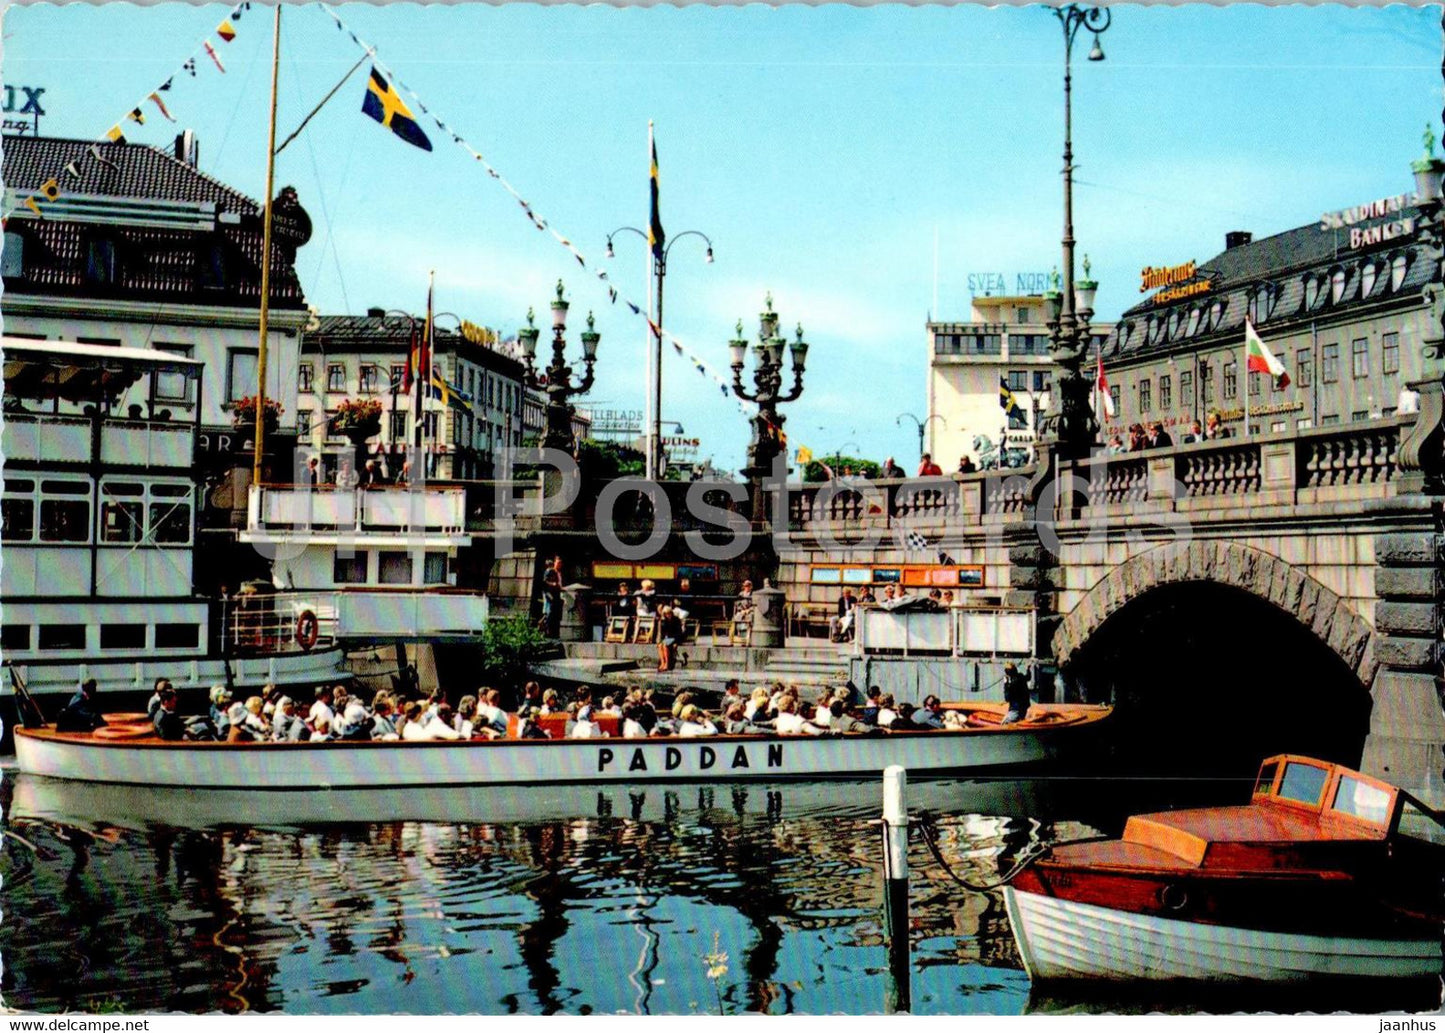 Goteborg - Paddans tillaggsplats - bridge - boat - 231 - Sweden - unused - JH Postcards